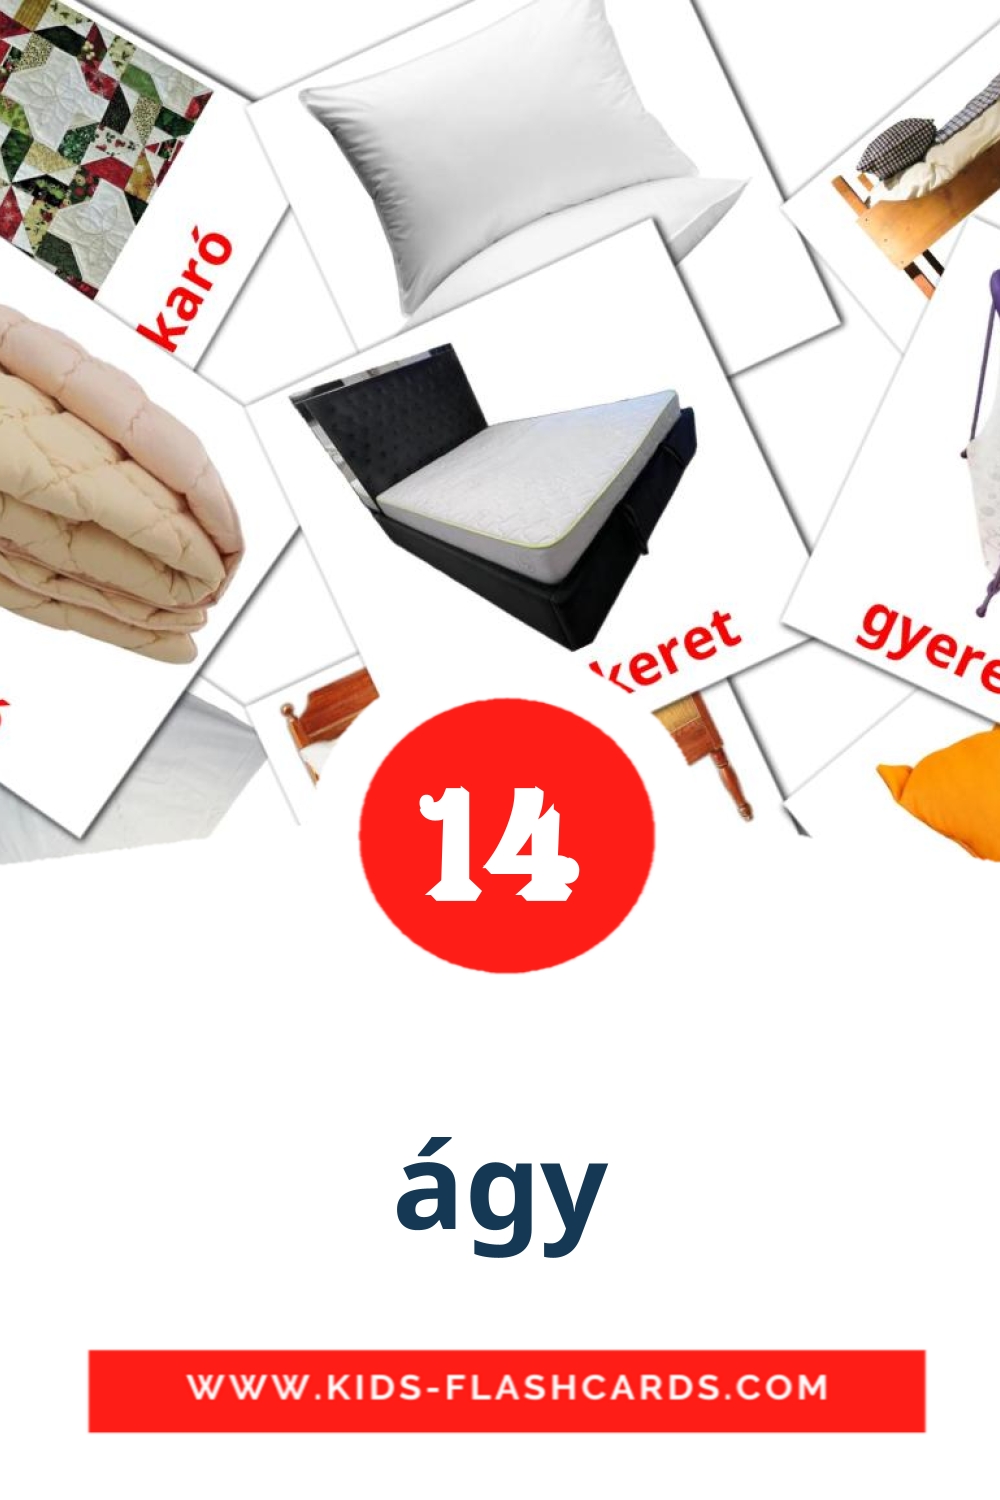 14 tarjetas didacticas de ágy para el jardín de infancia en albanés